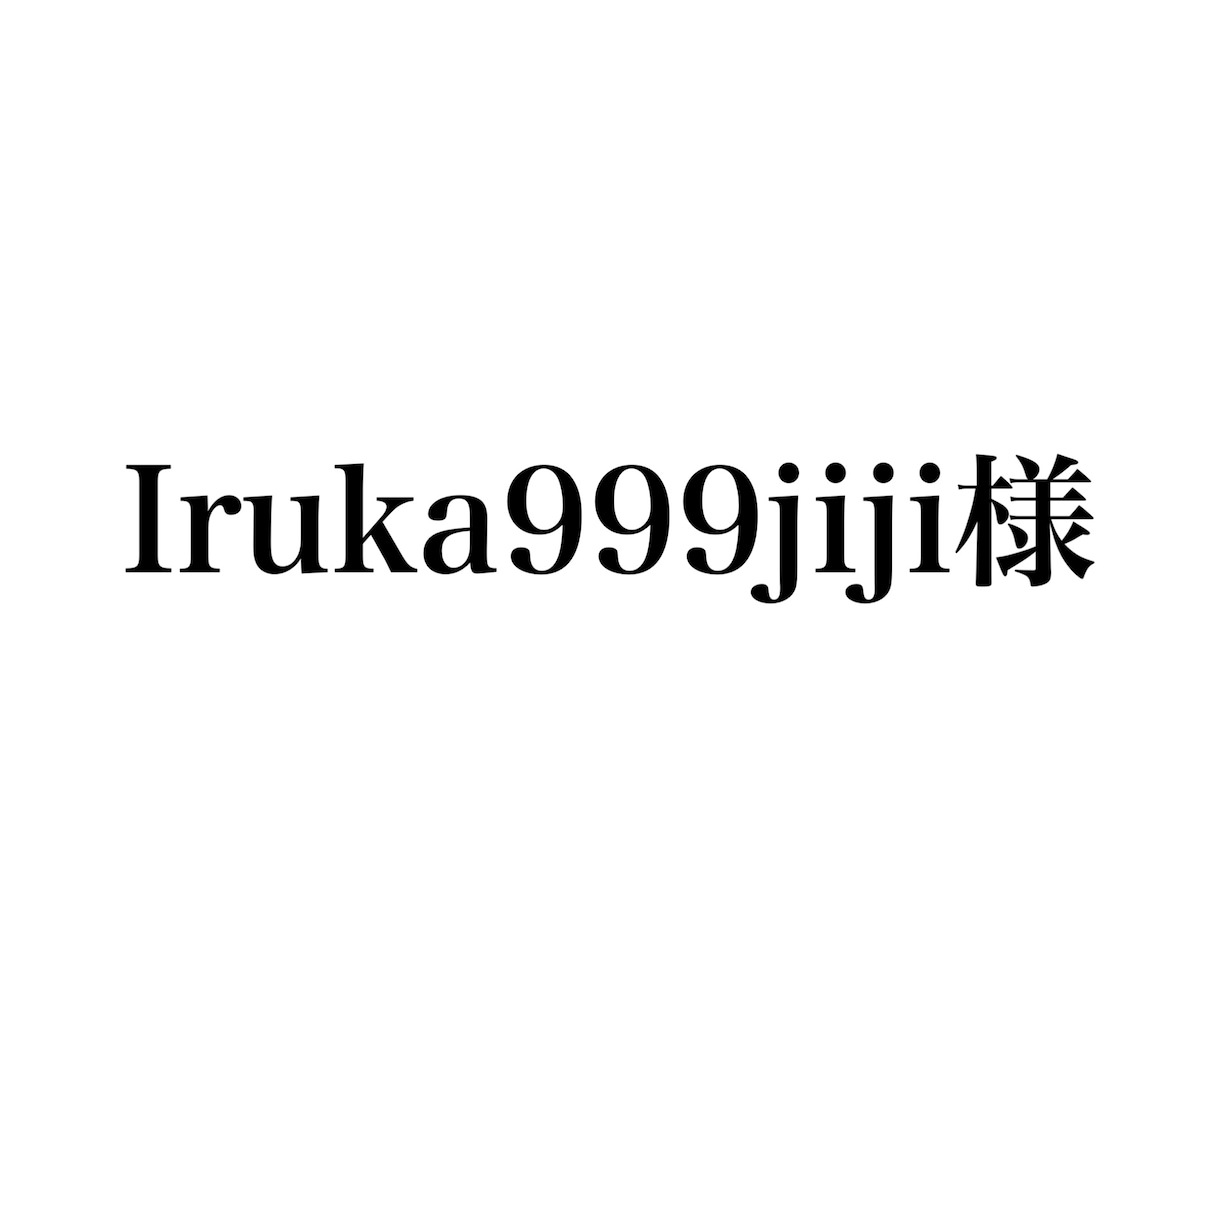 Iruka999jiji様専用ます Iruka999jiji様のページです。